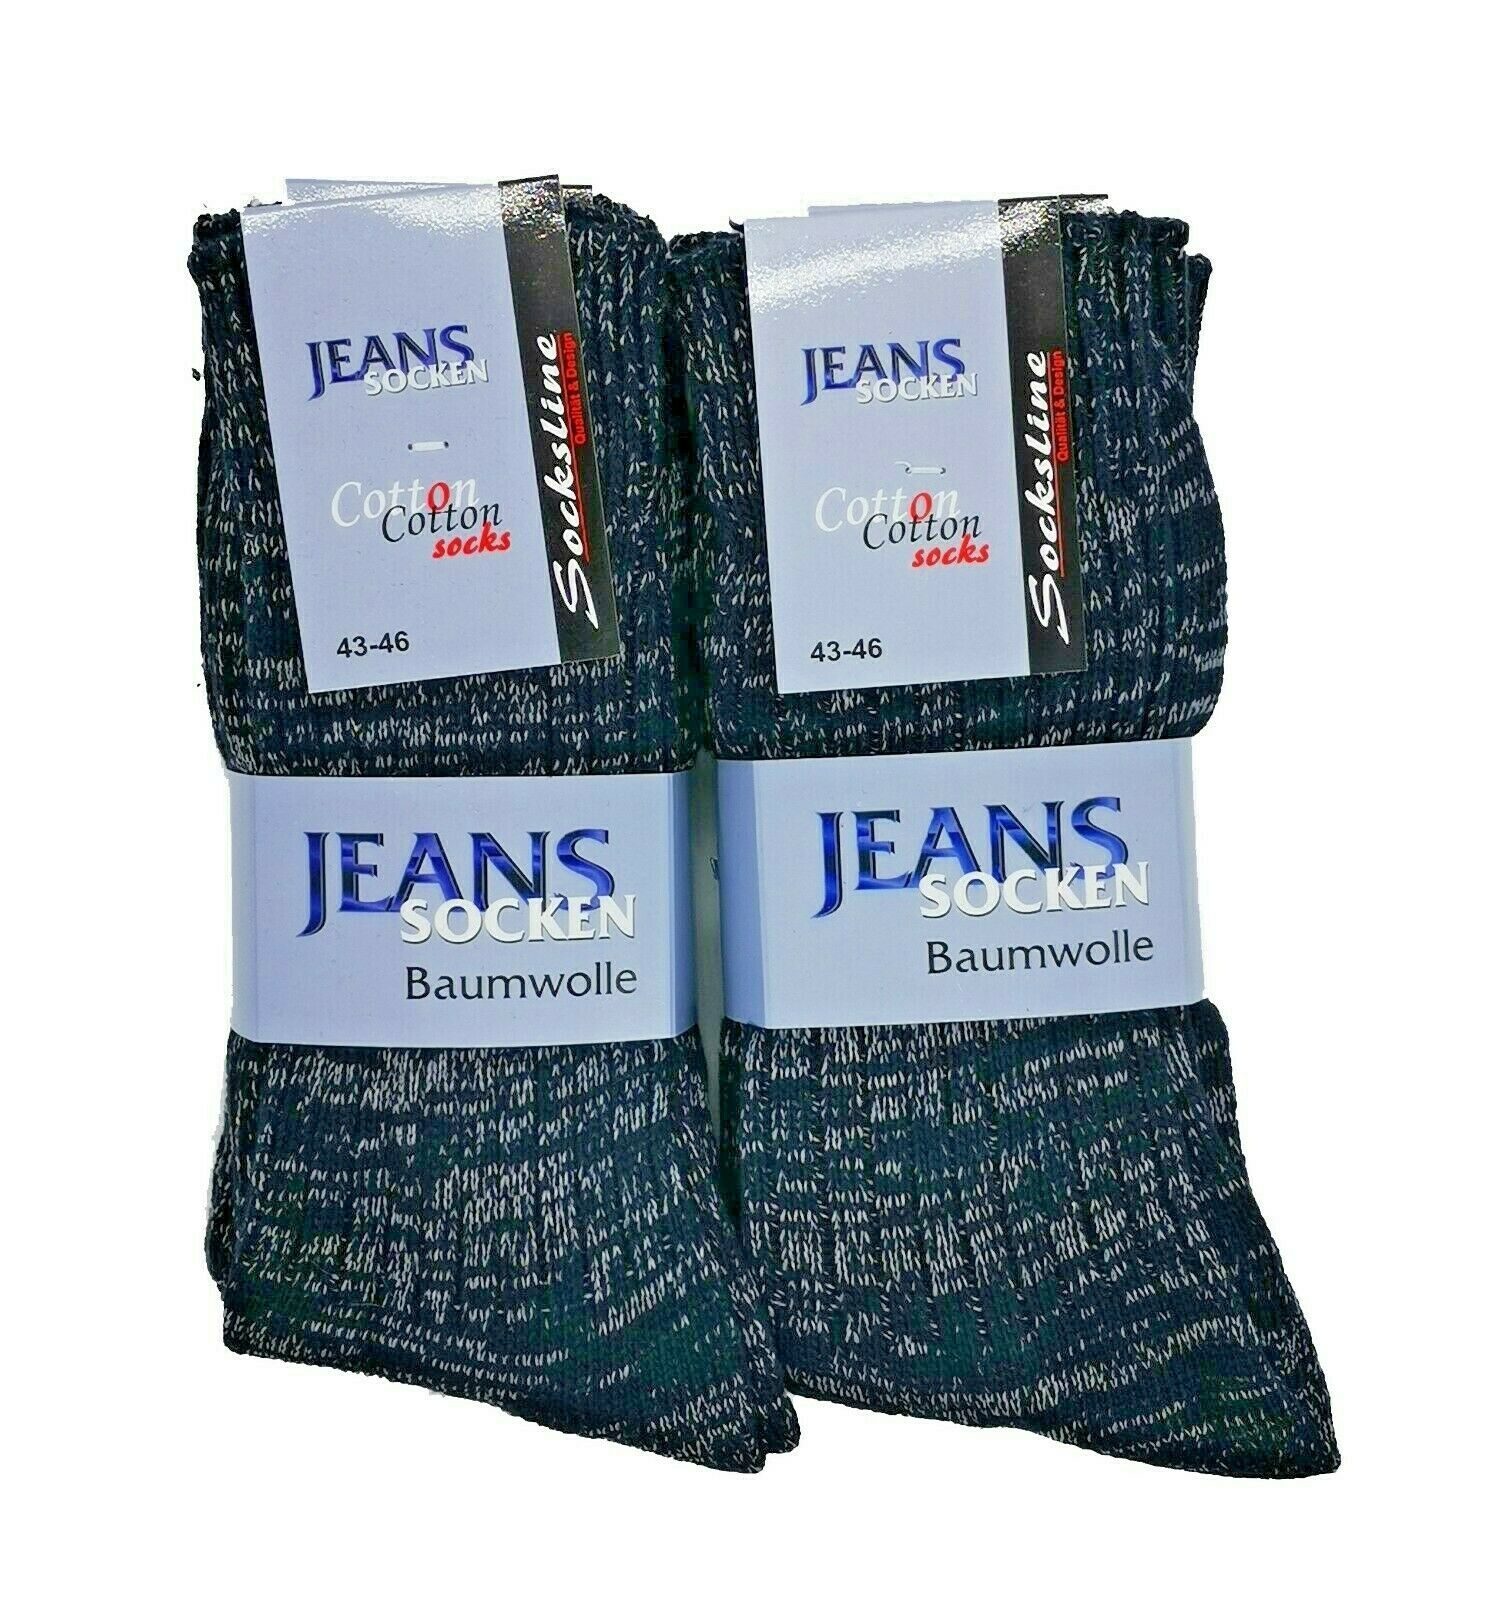 Jeanssocken 100% Baumwolle | Schenk Das Socken - Original